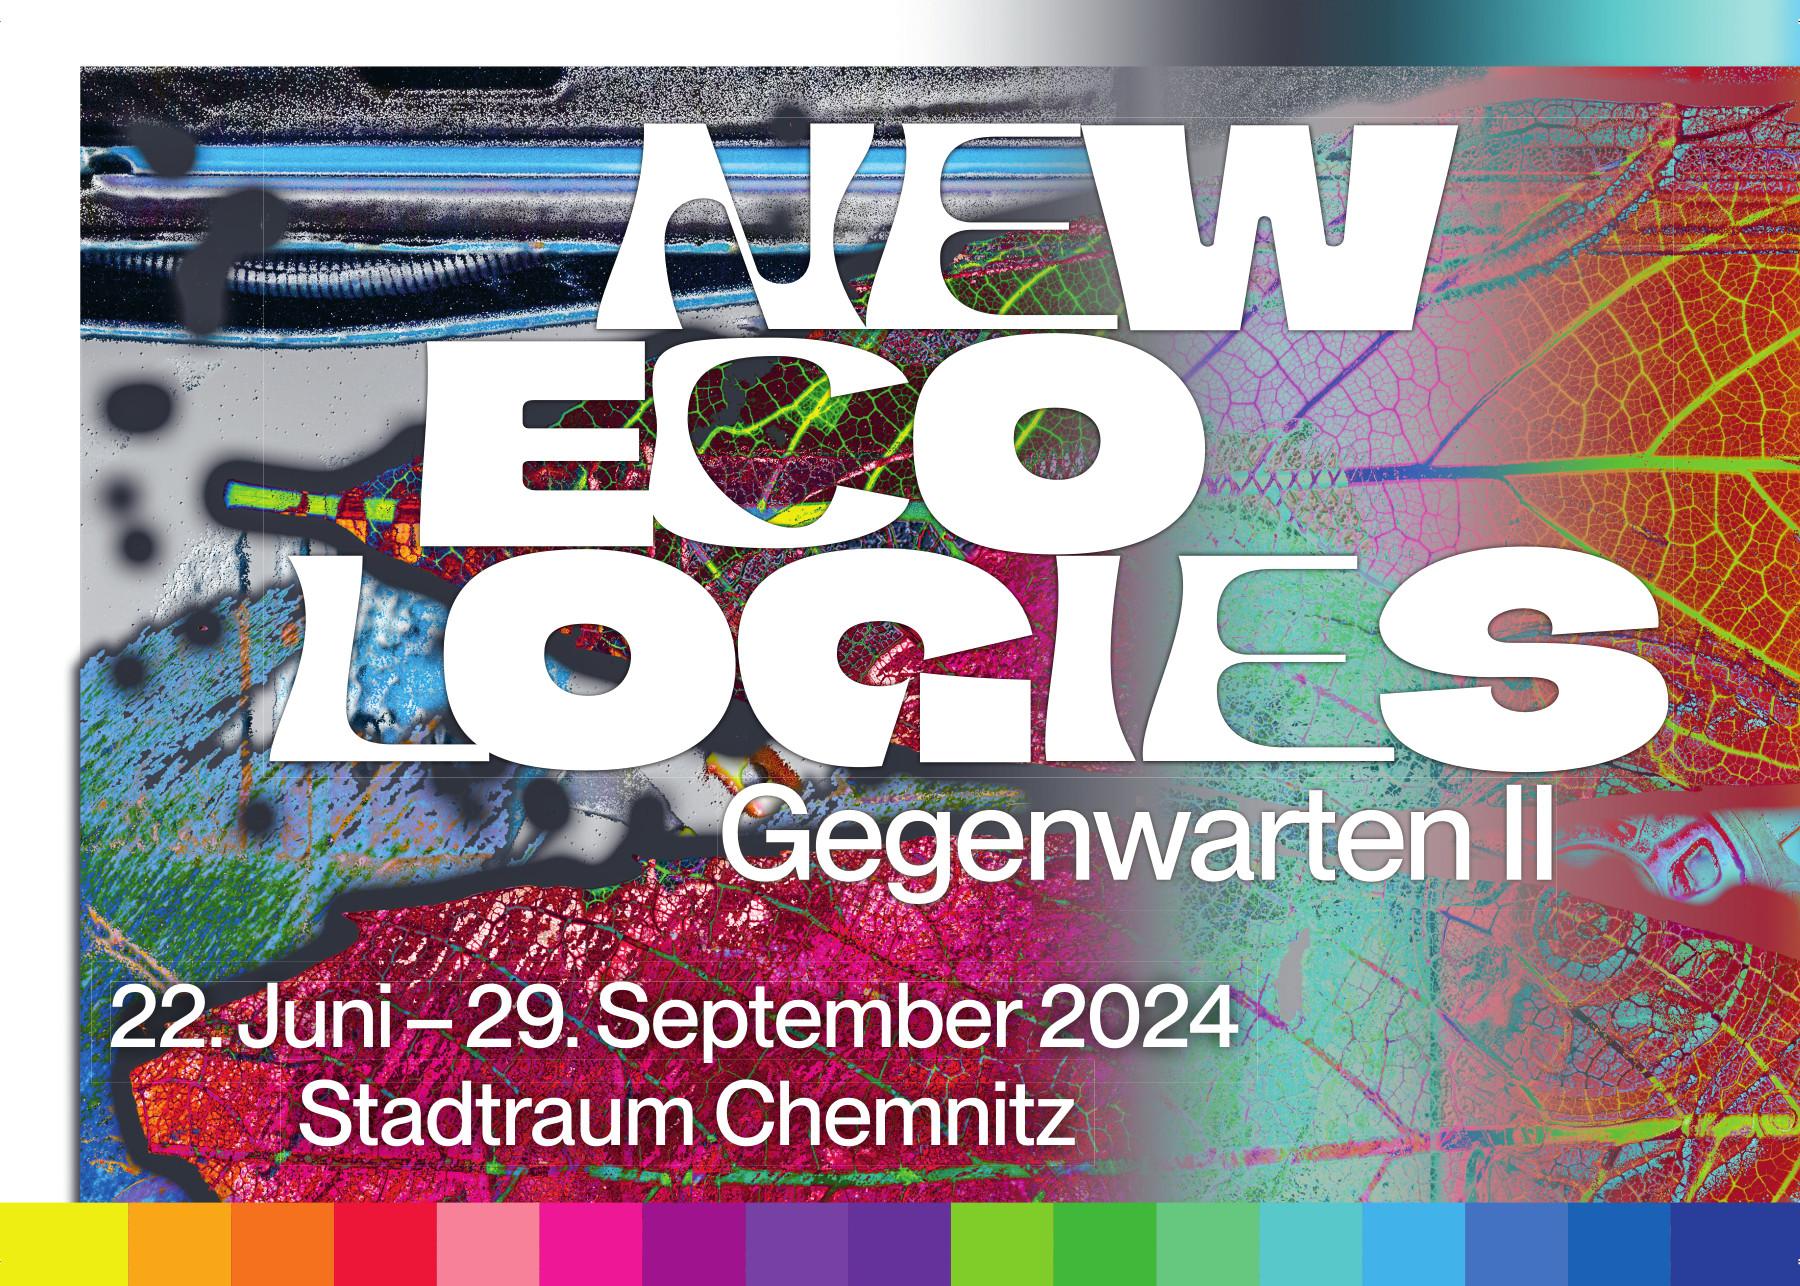 Gegenwarten II – New Ecologies exhibition flyer